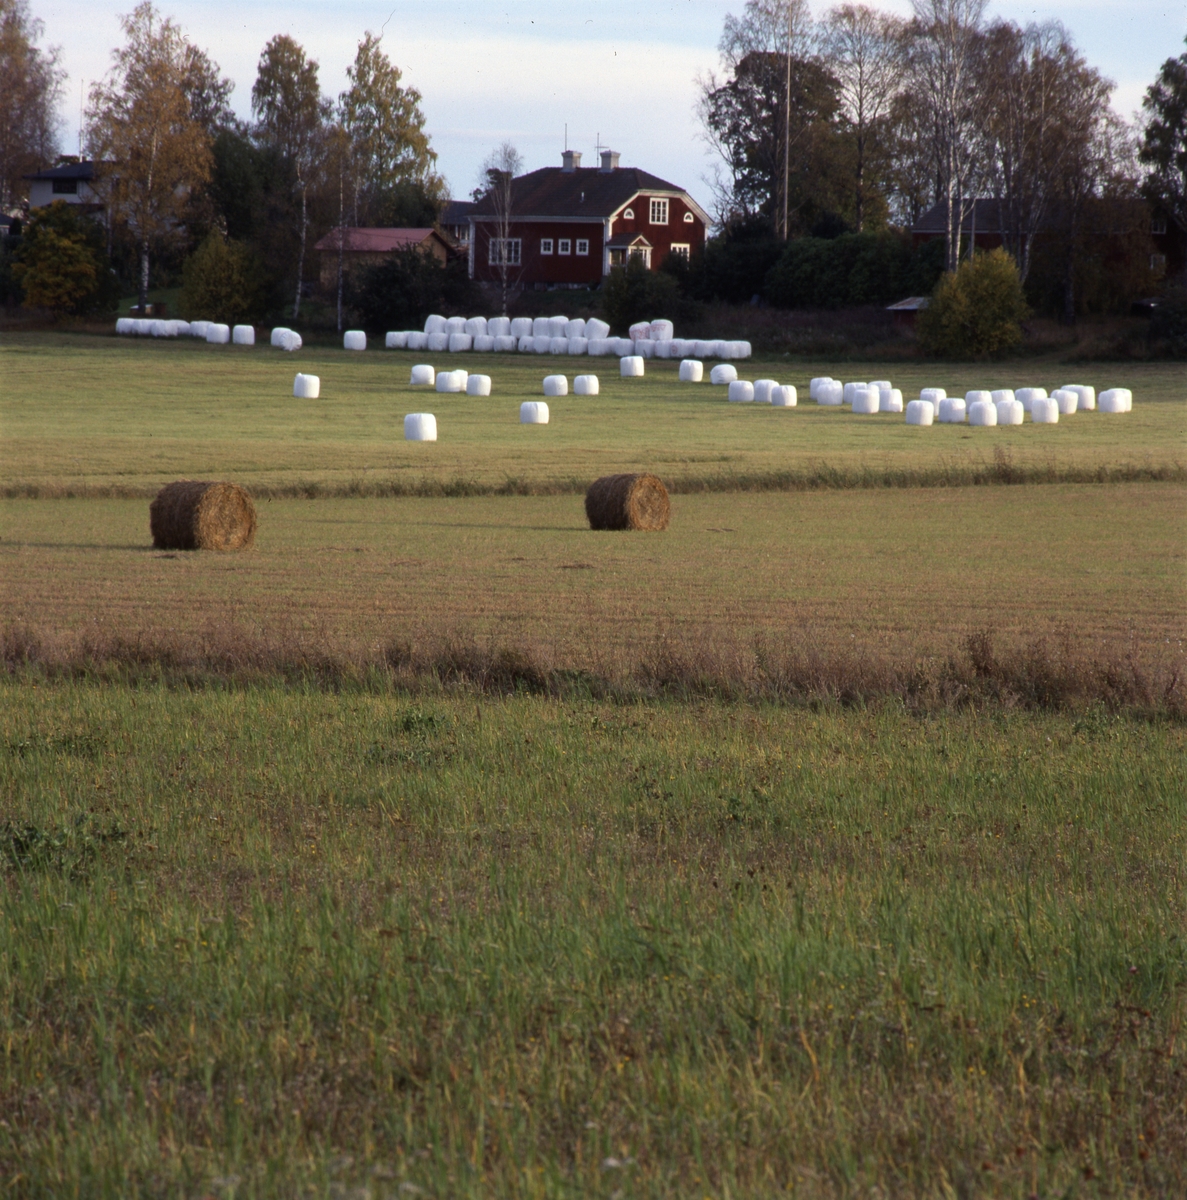 På en åker ligger höbalar och vita ensilagebalar utspridda och staplade. I bakgrunden ligger en gård, omgiven av träd.